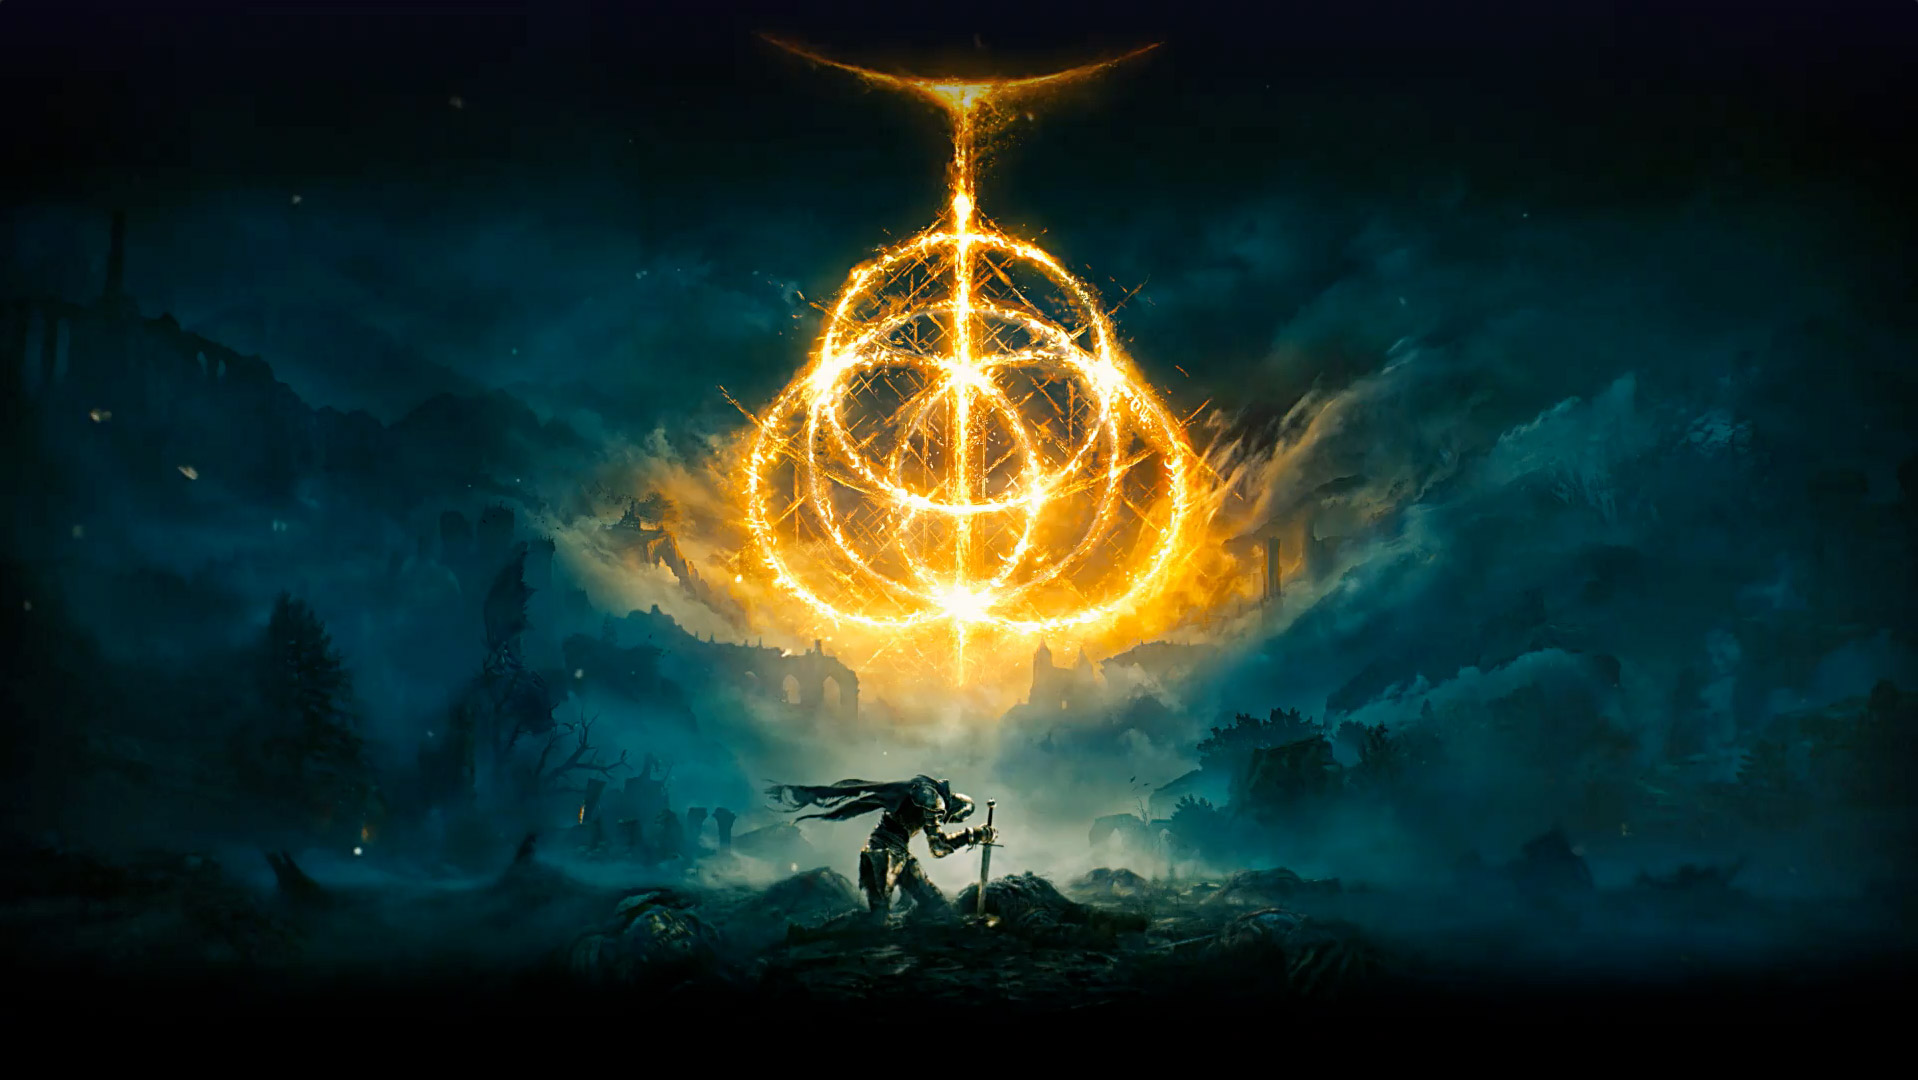 Elden Ring. Множество огненных колец, создающих символ Elden Ring. Персонаж-рыцарь с мечом в земле стоит в пустынной местности, окутанной туманом.